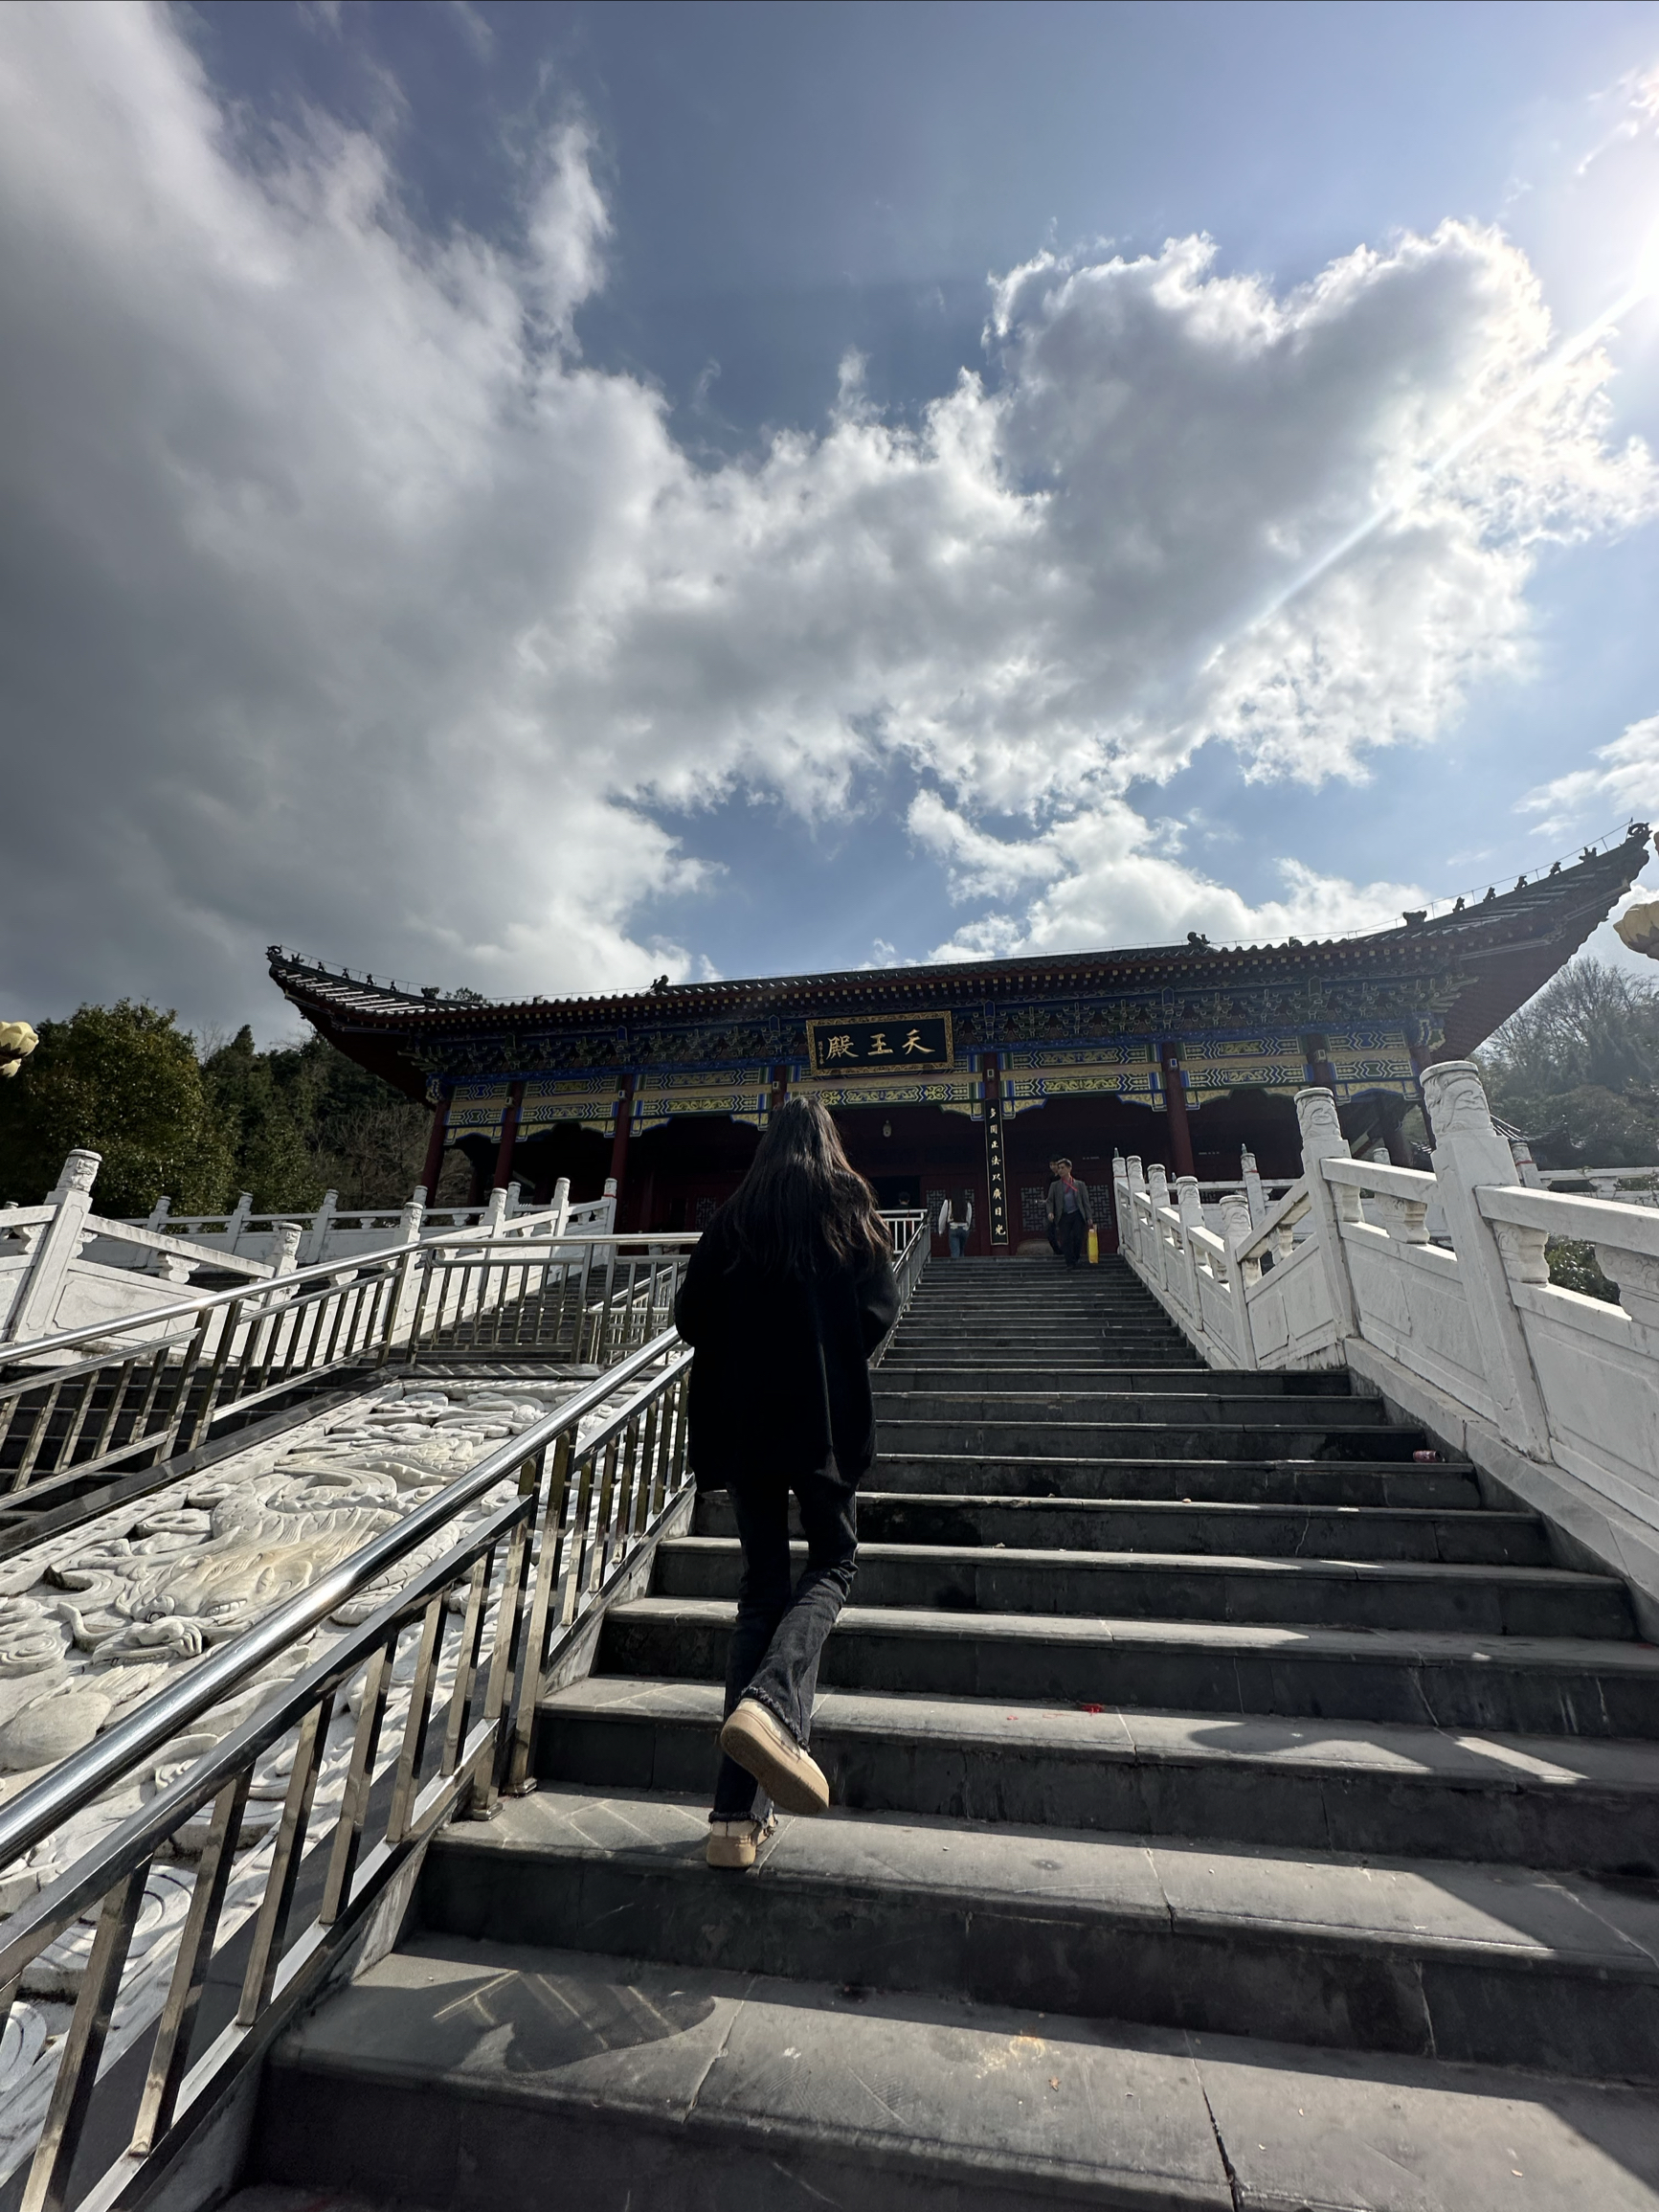 湖南省临武县东林寺 非常有乐趣的一个地方 冬暖夏凉人多热闹 有着我国佛祖的远大文化 有空可以带家人去